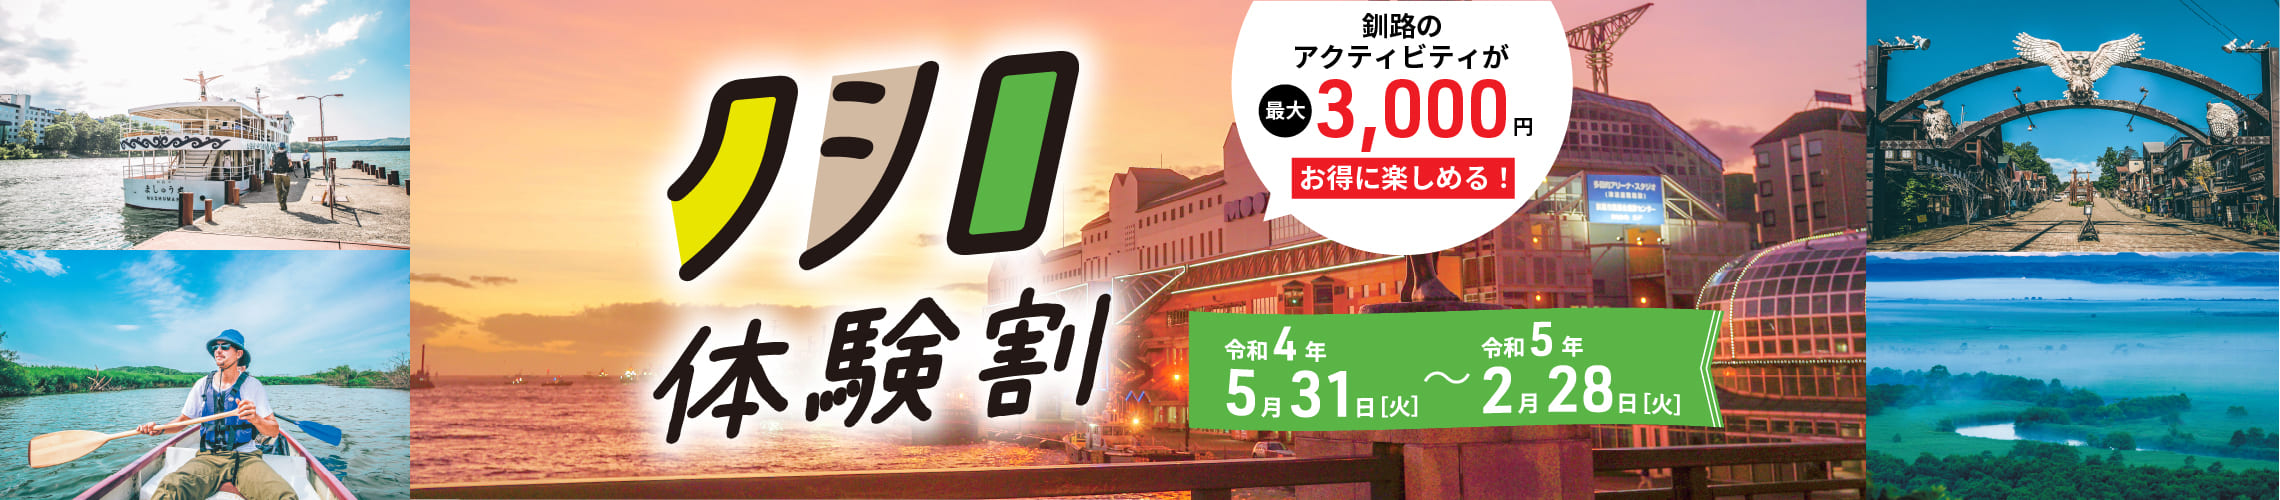 クシロ体験割 釧路市内のアジュティビティが最大3,000縁お得に楽しめる!